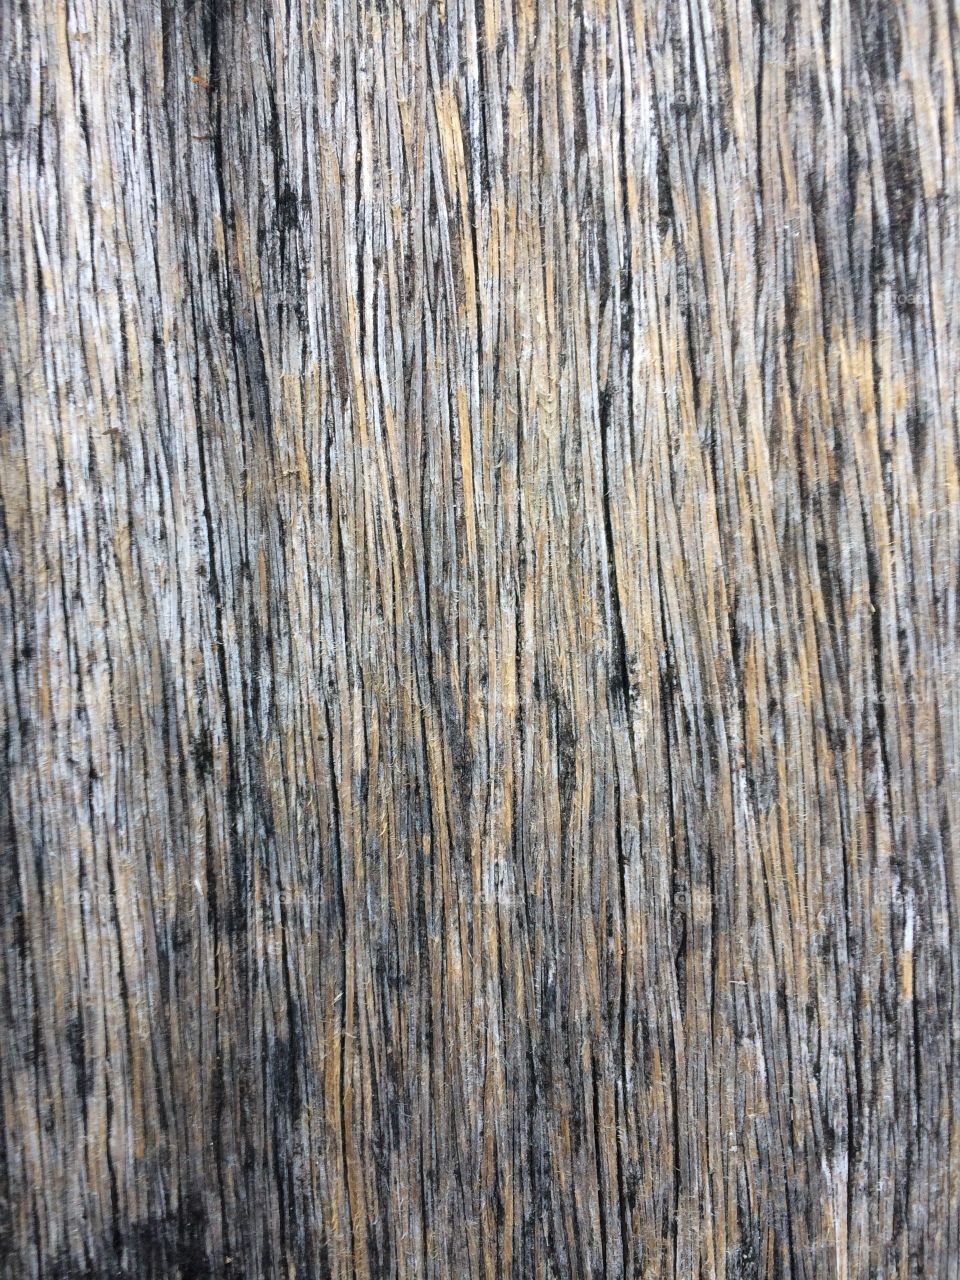 Wood
